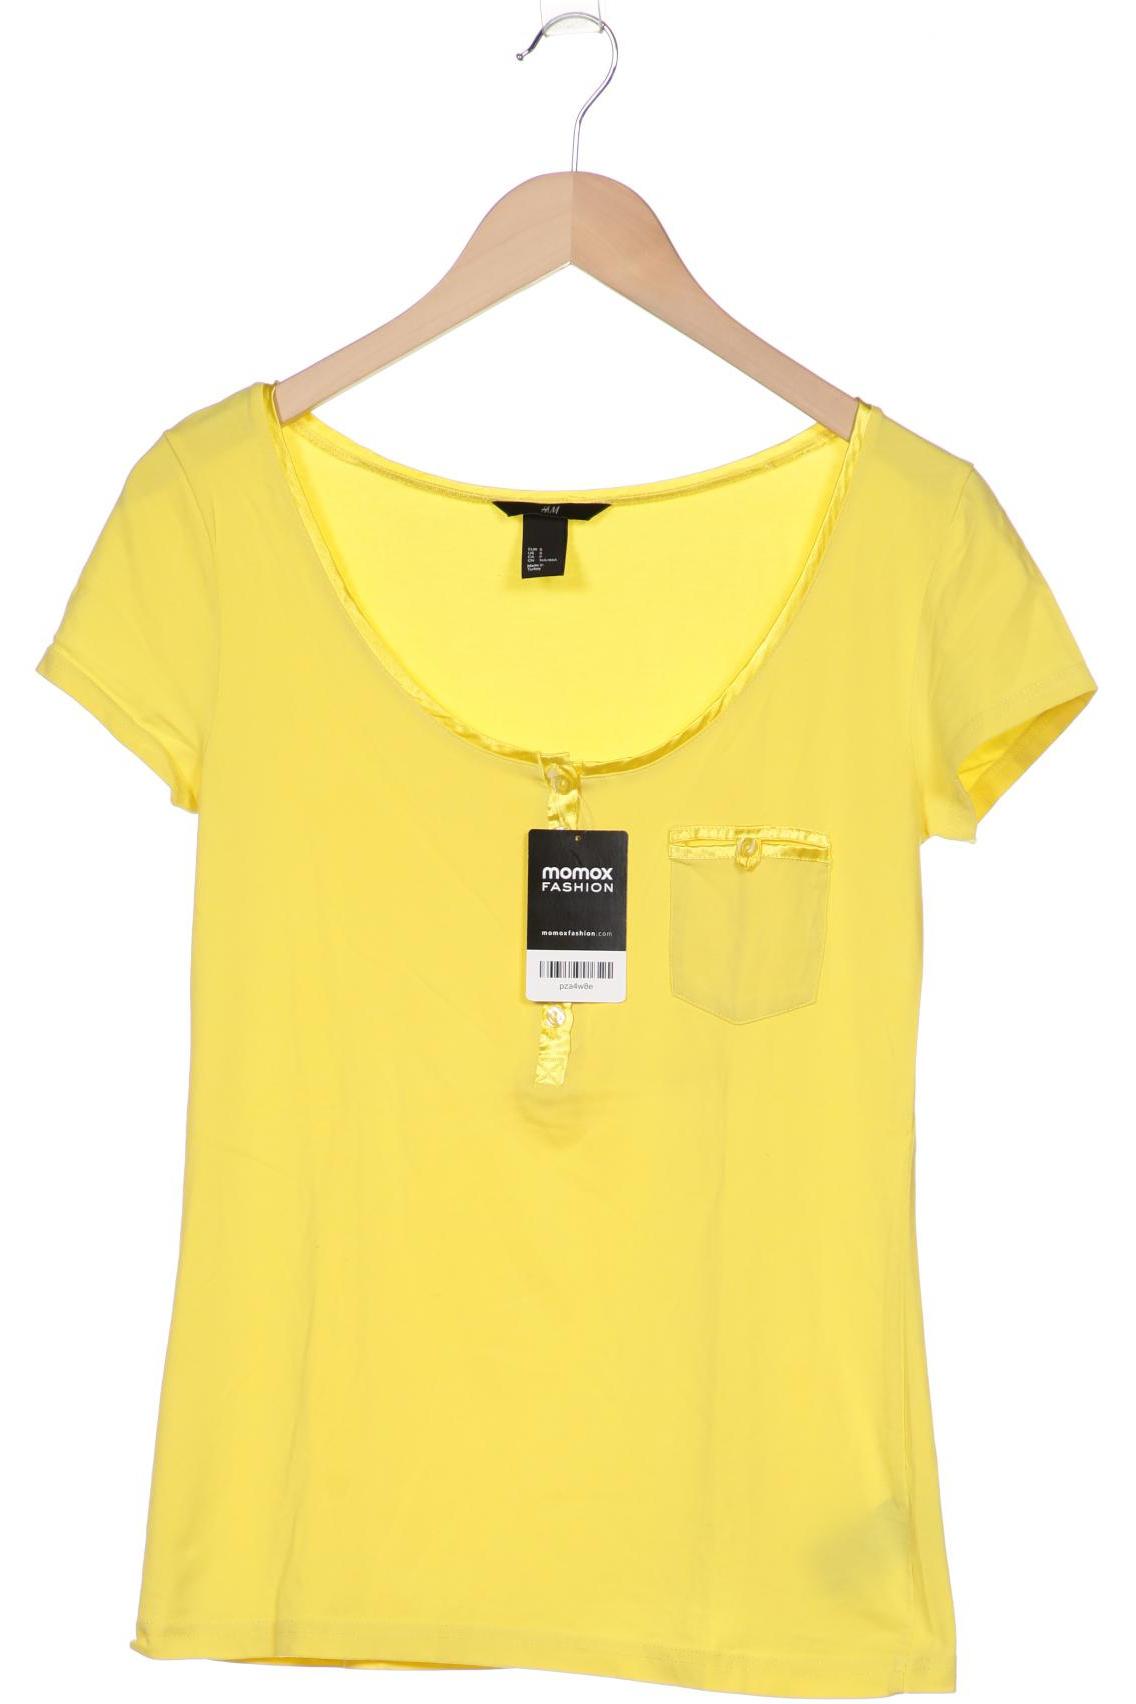 H&M Damen T-Shirt, gelb von H&M